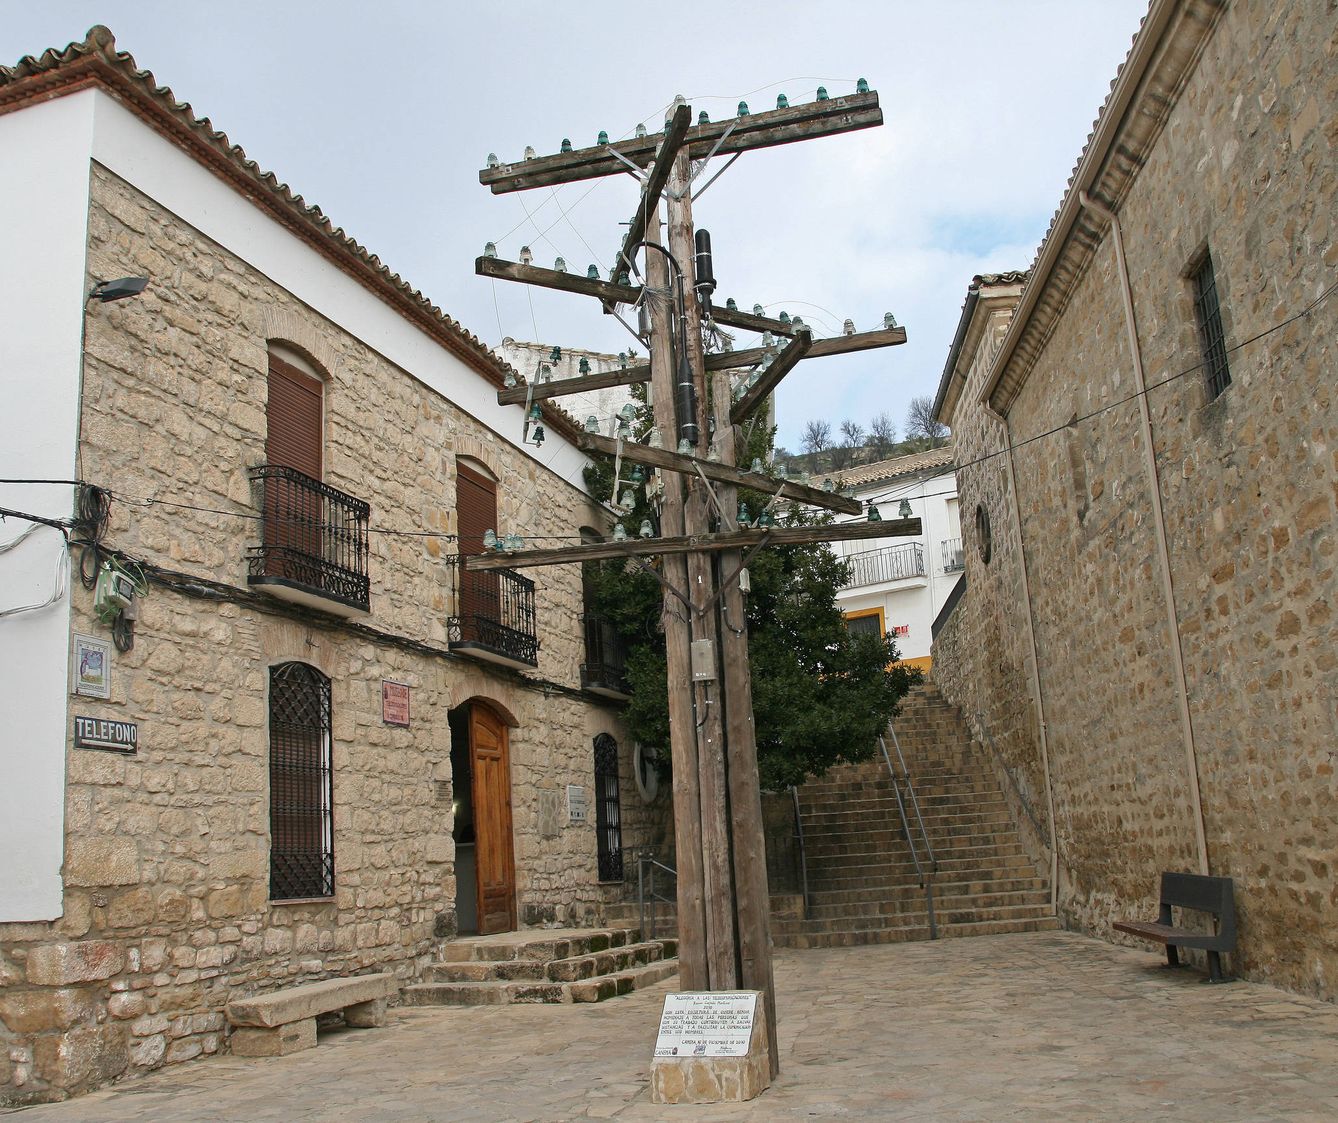 Entrada al Museo de Telecomunicaciones de Canena, con una escultura alegórica. (Imagen: Toño Ramos (Patrimonio de Telefonía) | Flickr)